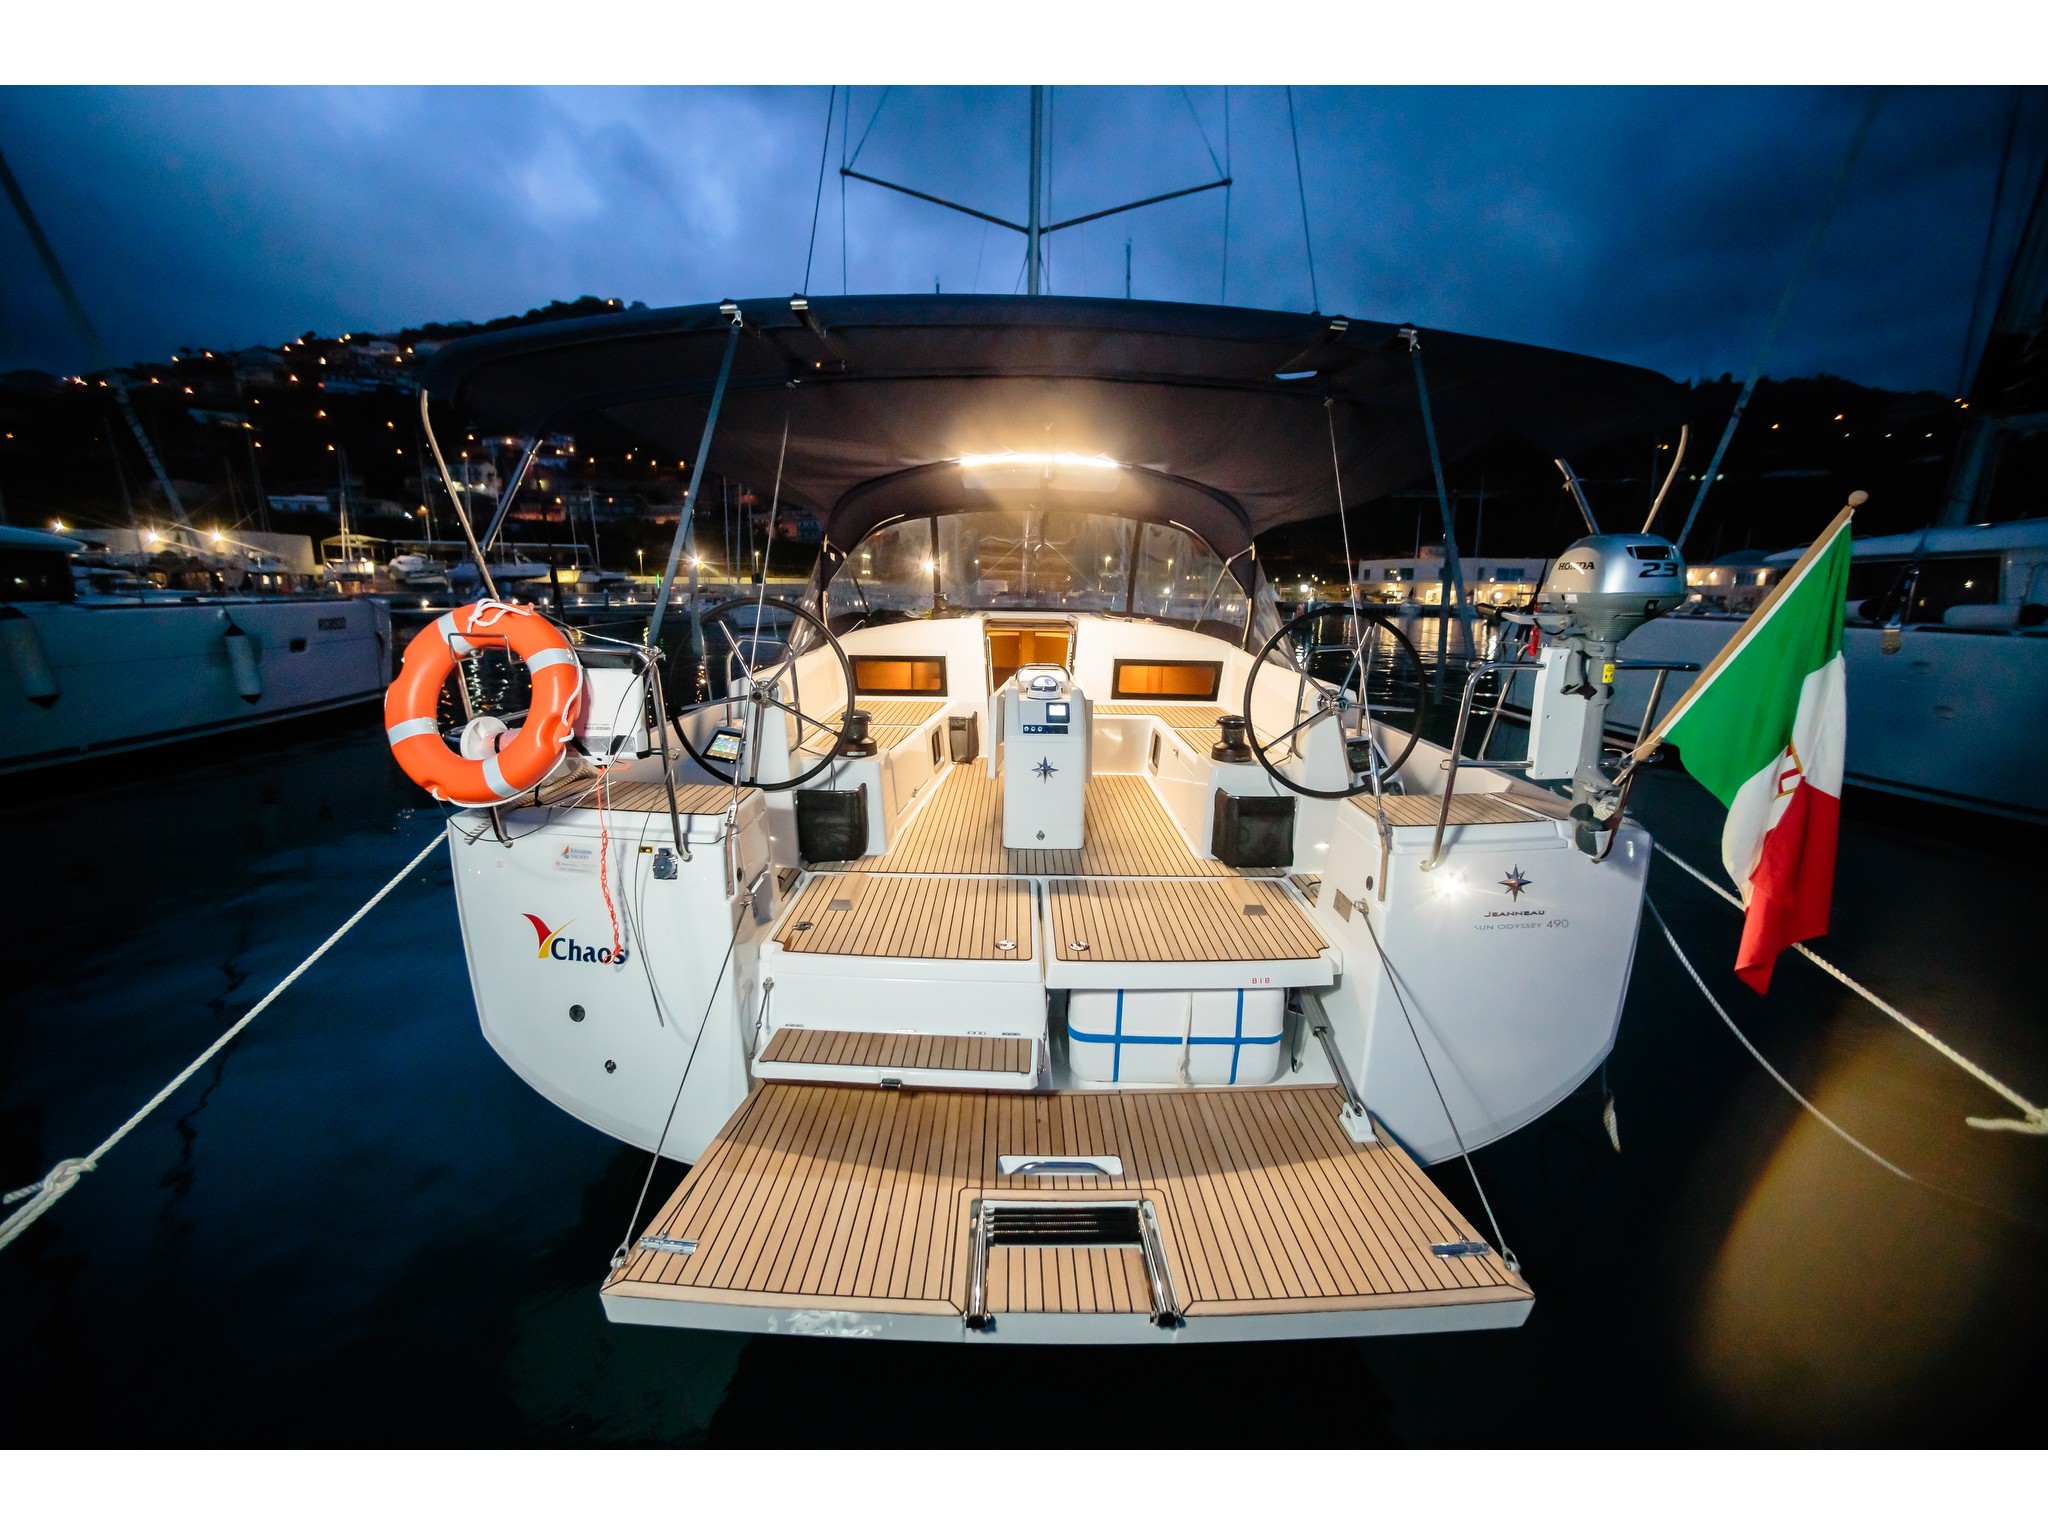 Sun Odyssey 490 - Yacht Charter Capo d'Orlando & Boat hire in Italy Sicily Aeolian Islands Capo d'Orlando Capo d'Orlando Marina 2